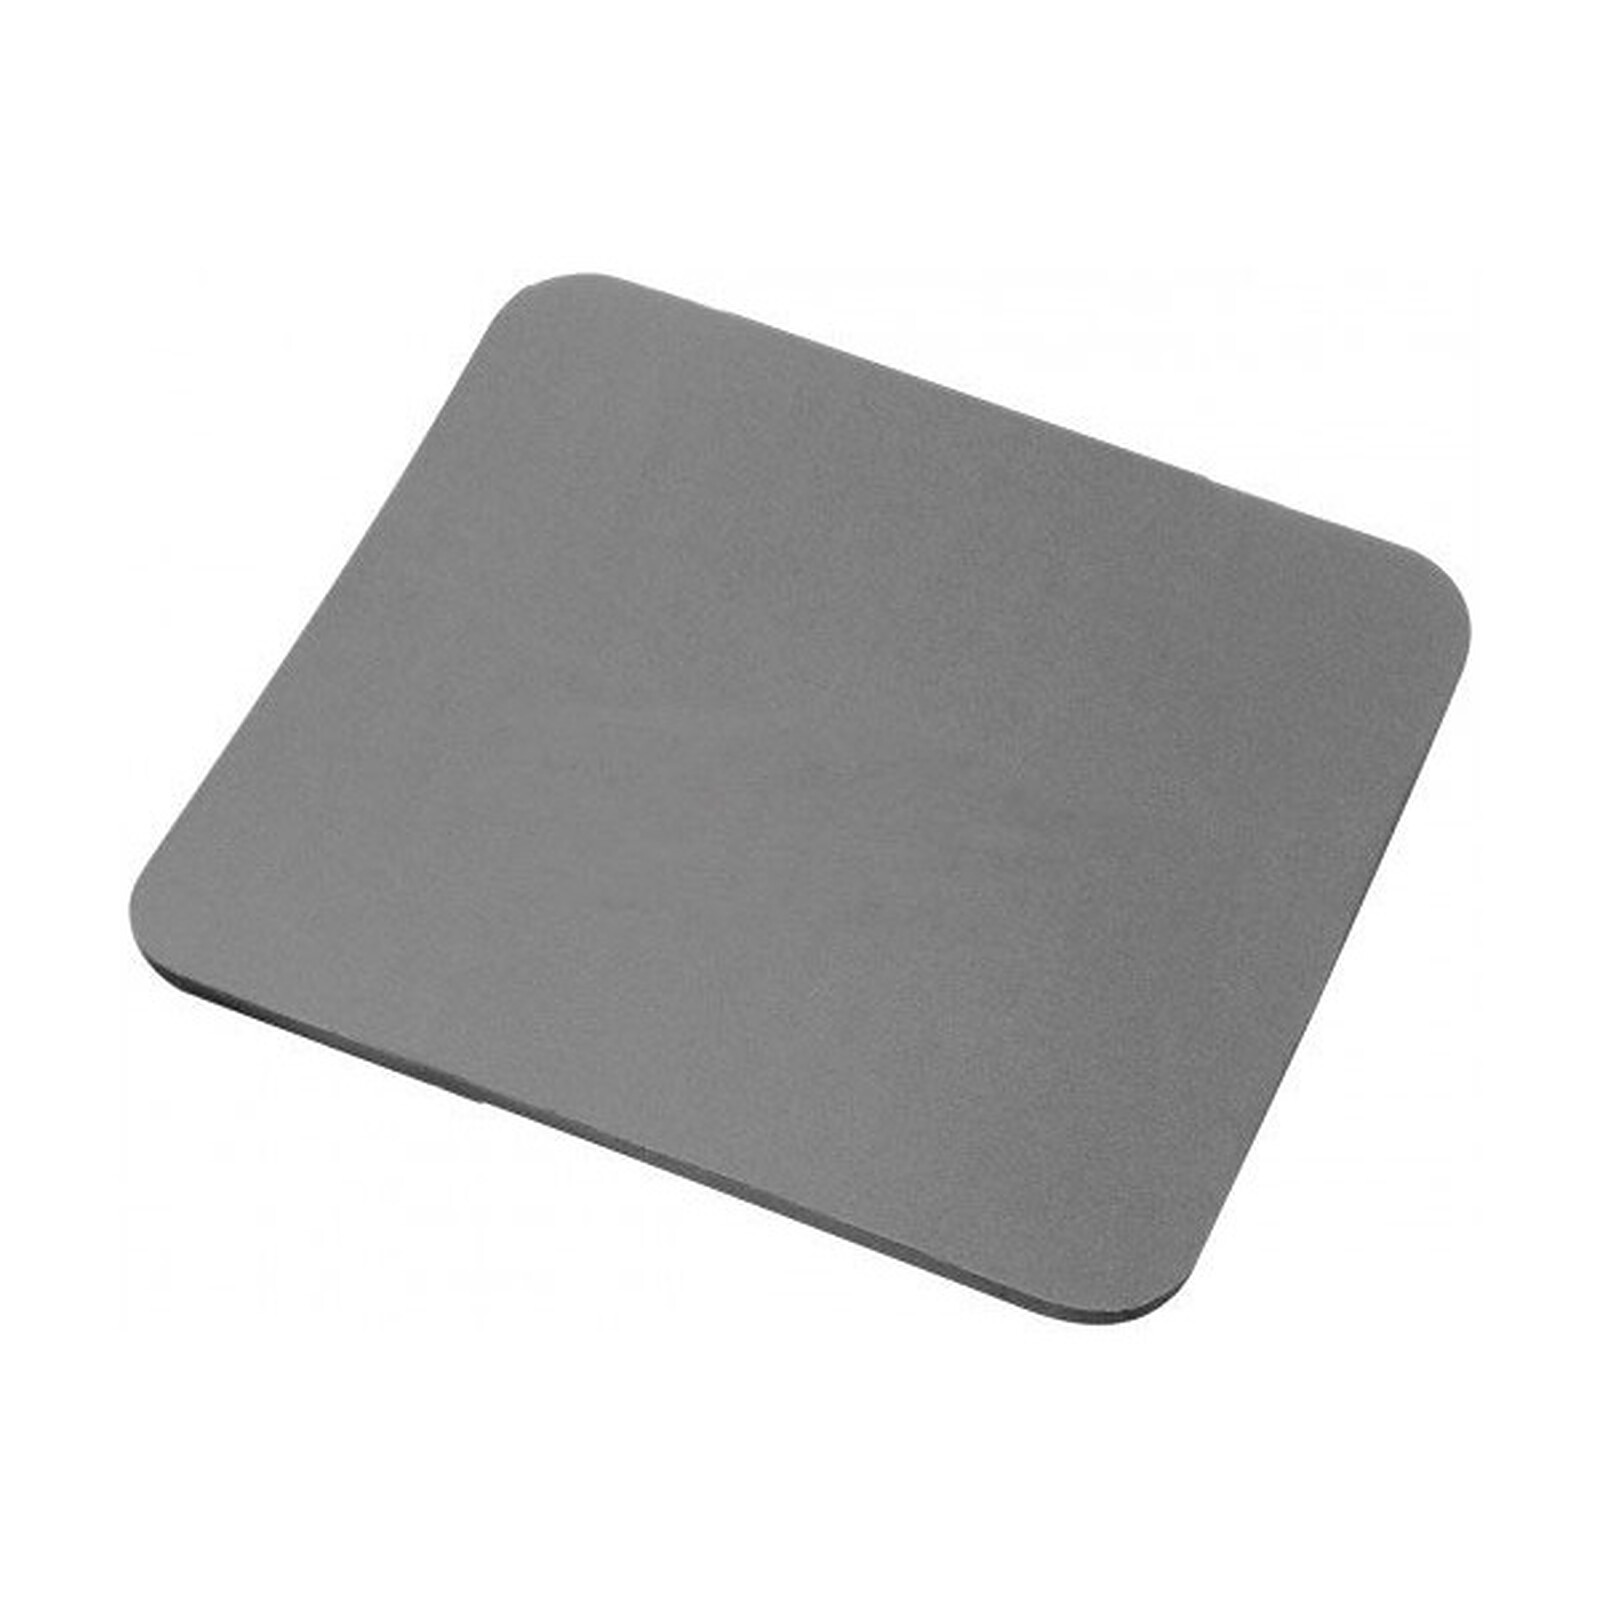 Tapis de souris simple (coloris gris) - Tapis de souris - Garantie